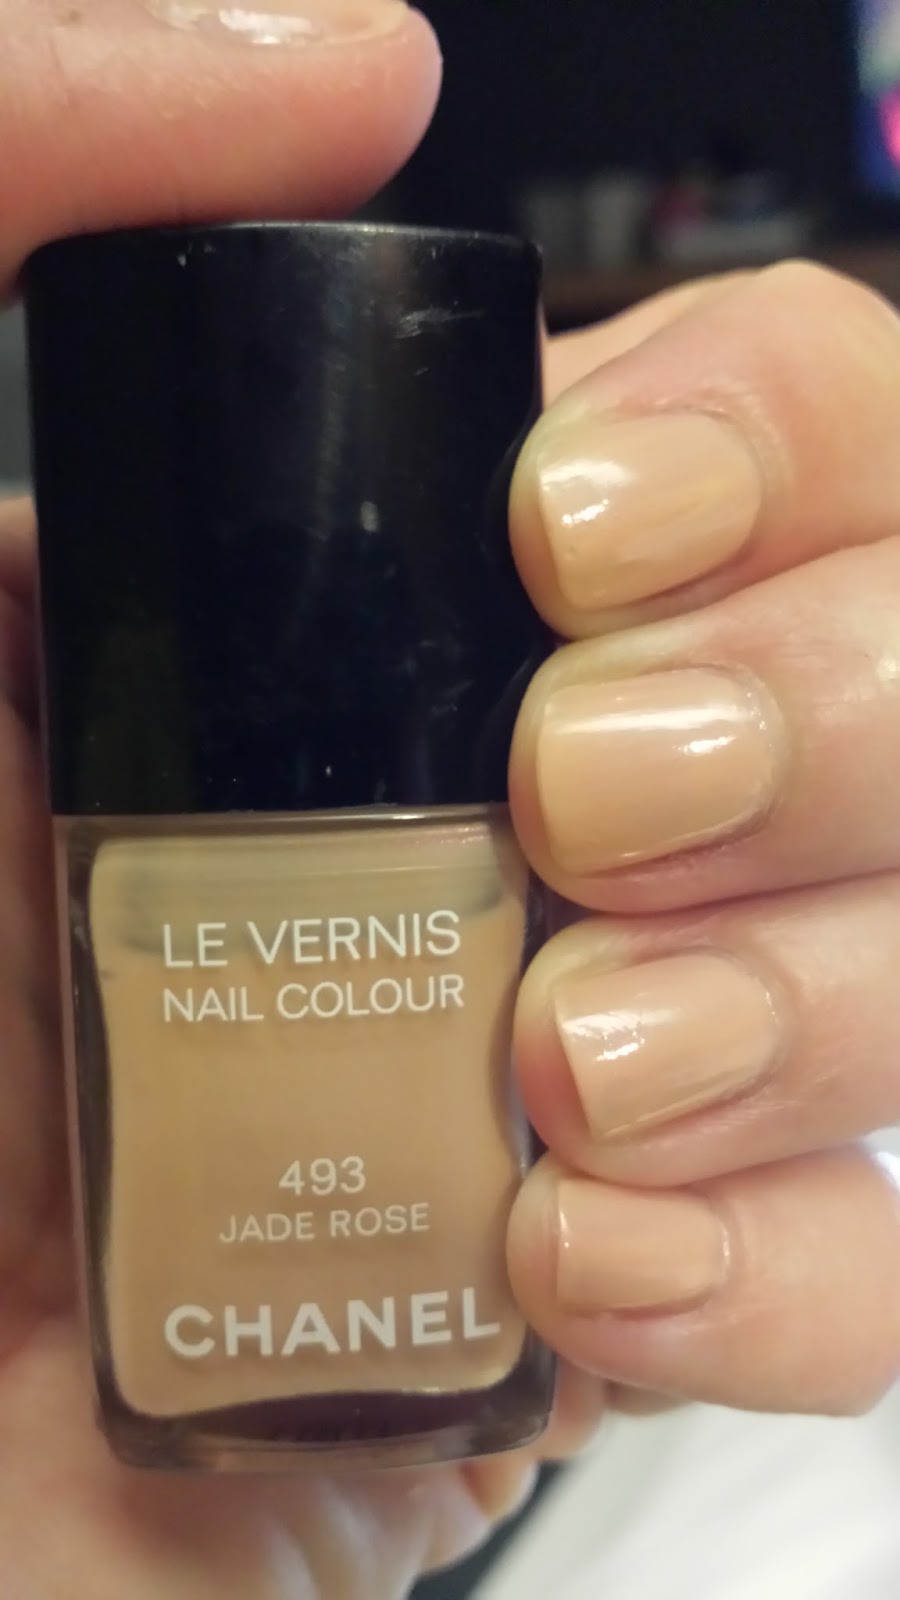 Lipgloss Chanel nail polish in Jade Rose